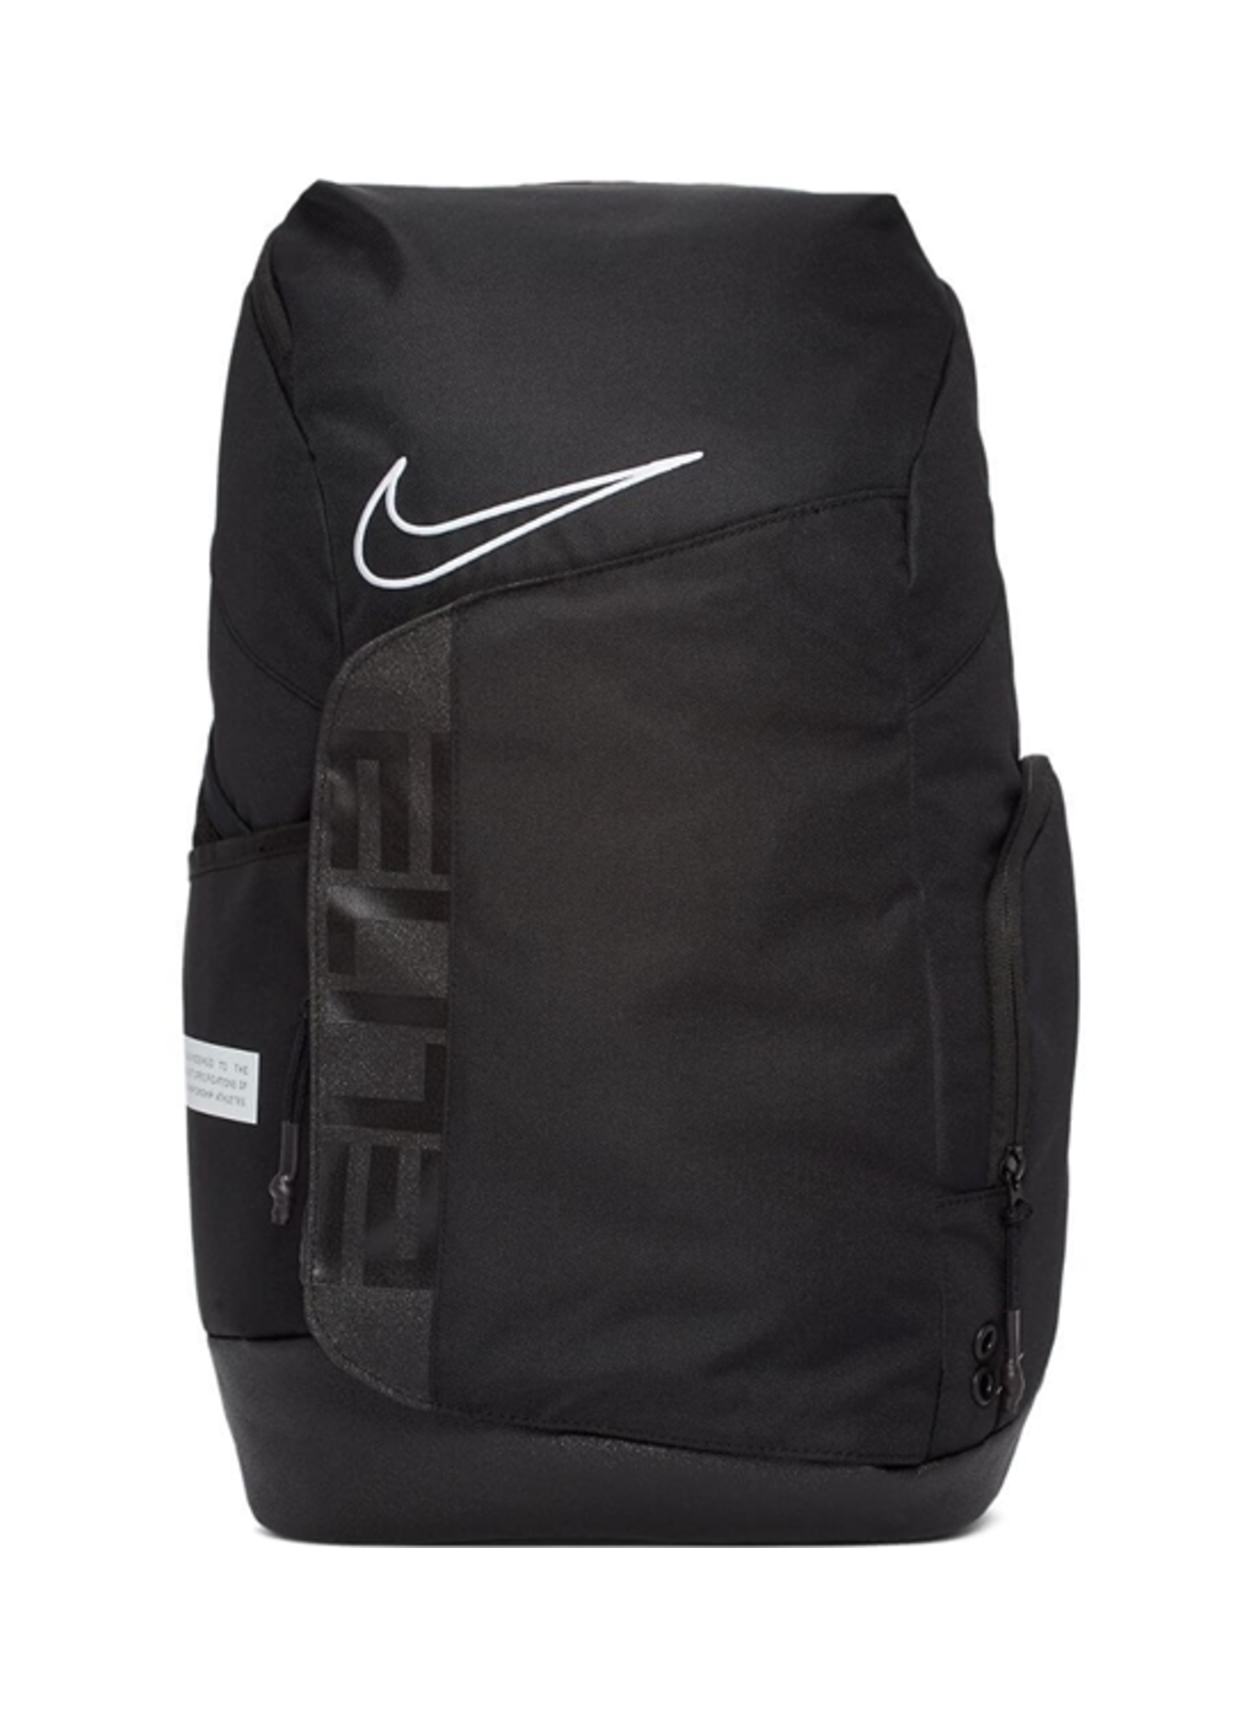 Cúal Viento versus Nike Elite Pro Backpack